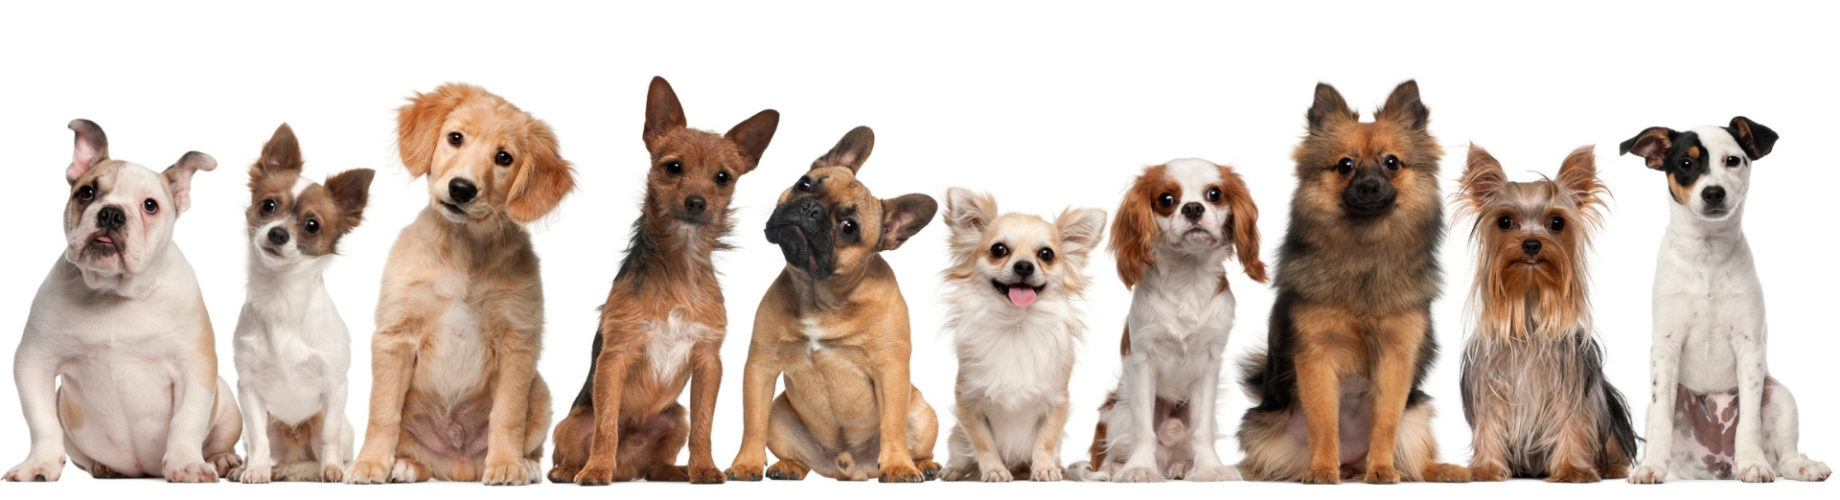 ▻ lo que debes saber sobre el apareamiento y cruce de razas en perros - Yo amo a las mascotas